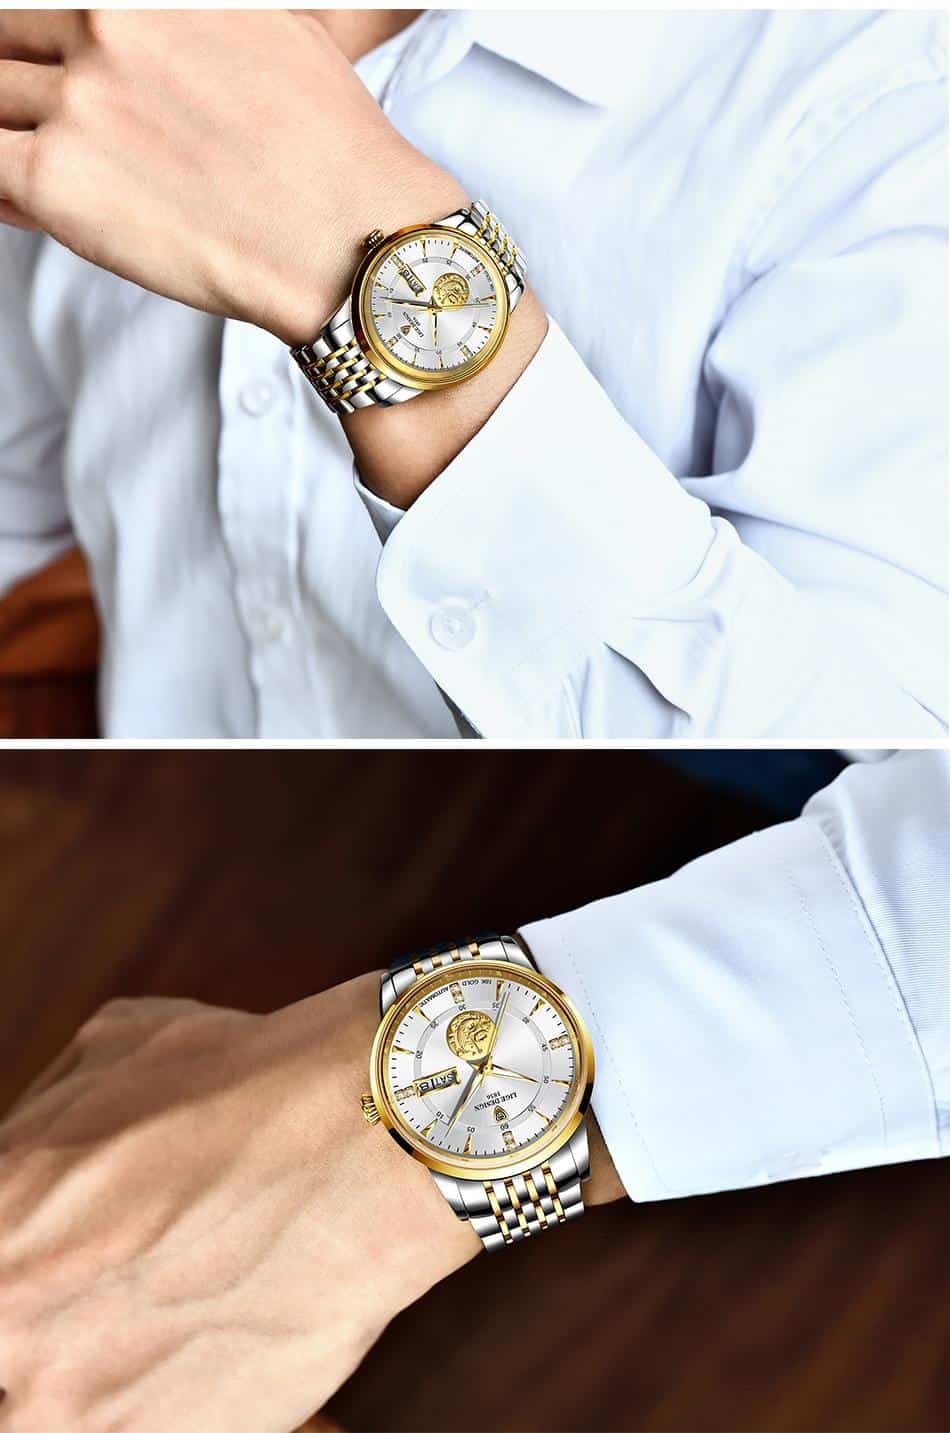 LIGE Men Automatic Mechanical Watches Luxury Brand Business Wrist Watch Tungsten Steel Waterproof Men Fashion Clock reloj hombre